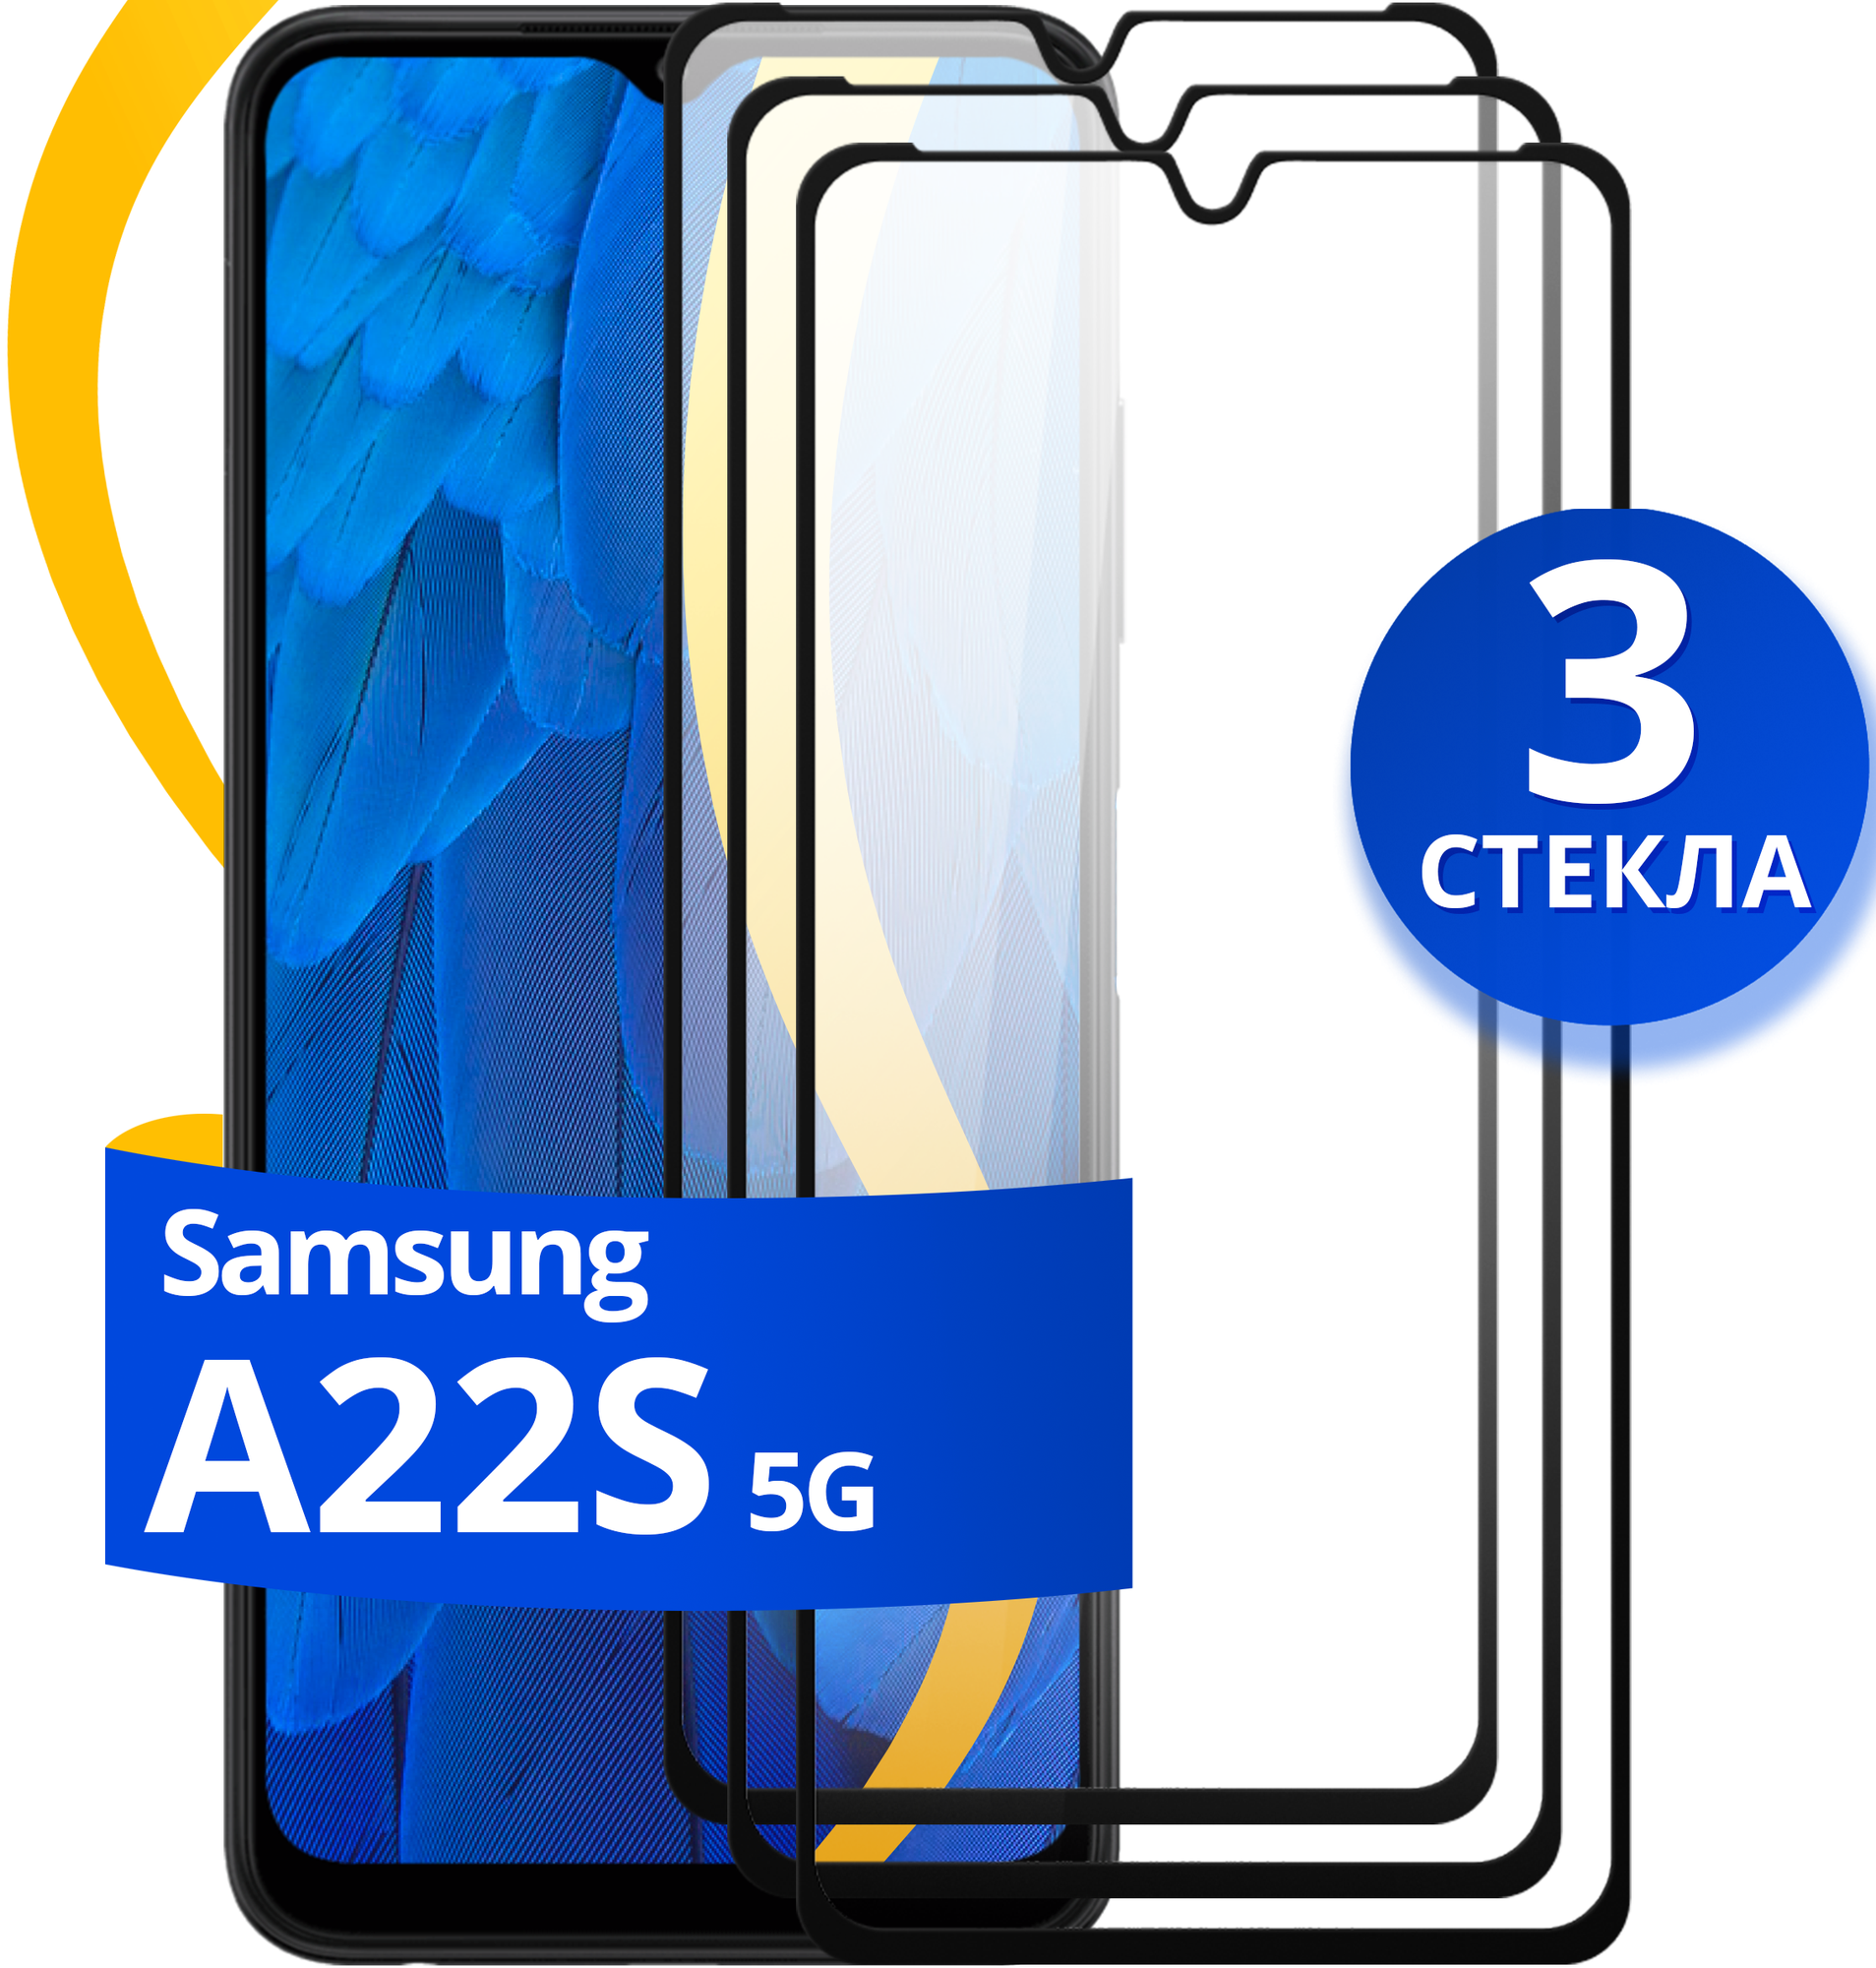 Комплект 2 шт защитное стекло для телефона Samsung Galaxy A22S 5G / Набор противоударных стекол на смартфон Самсунг Галакси А22С 5Г